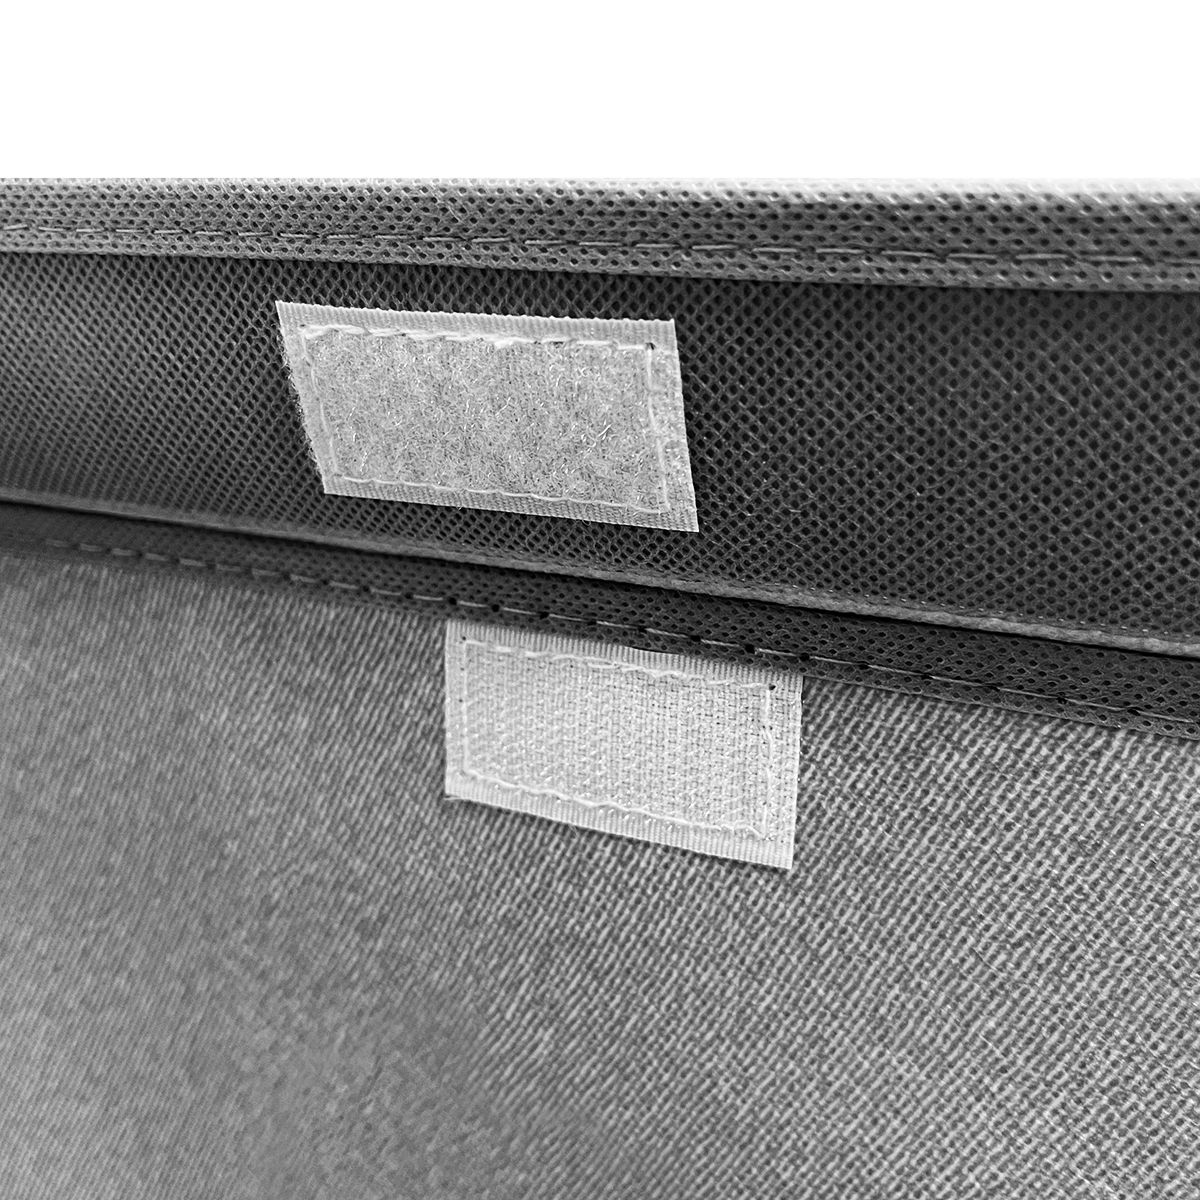 Ящик для зберігання з кришкою МВМ My Home S текстильний, 270х200х160 мм, сірий (TH-07 S GRAY) - фото 2